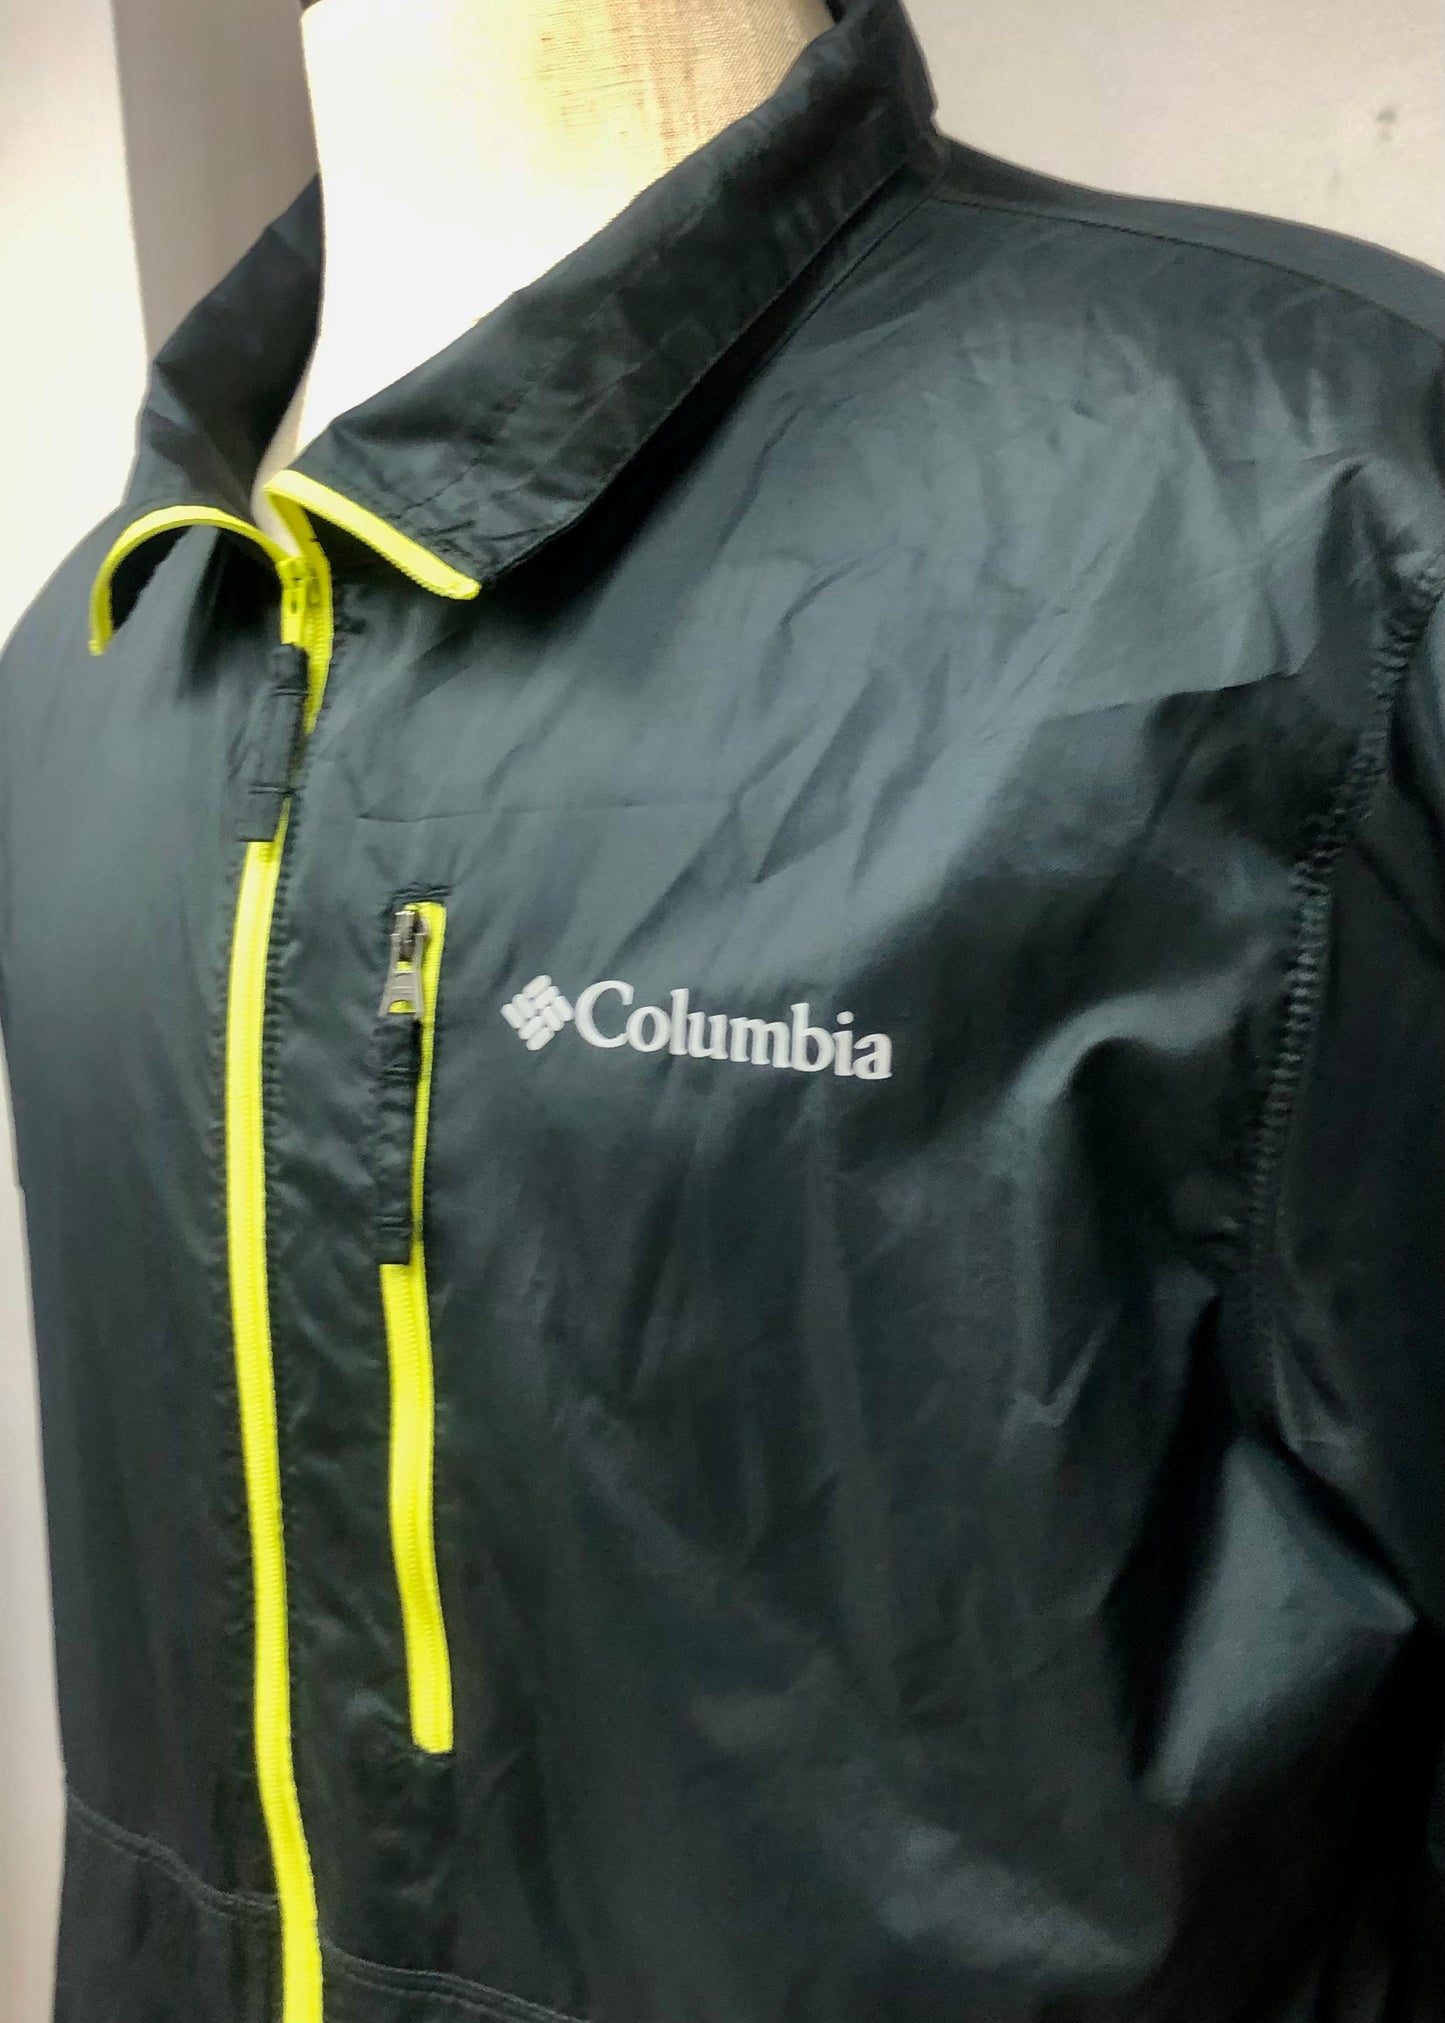 Jacket Columbia 🔷 color negro con zíper completo color amarillo y logo en color gris Talla M